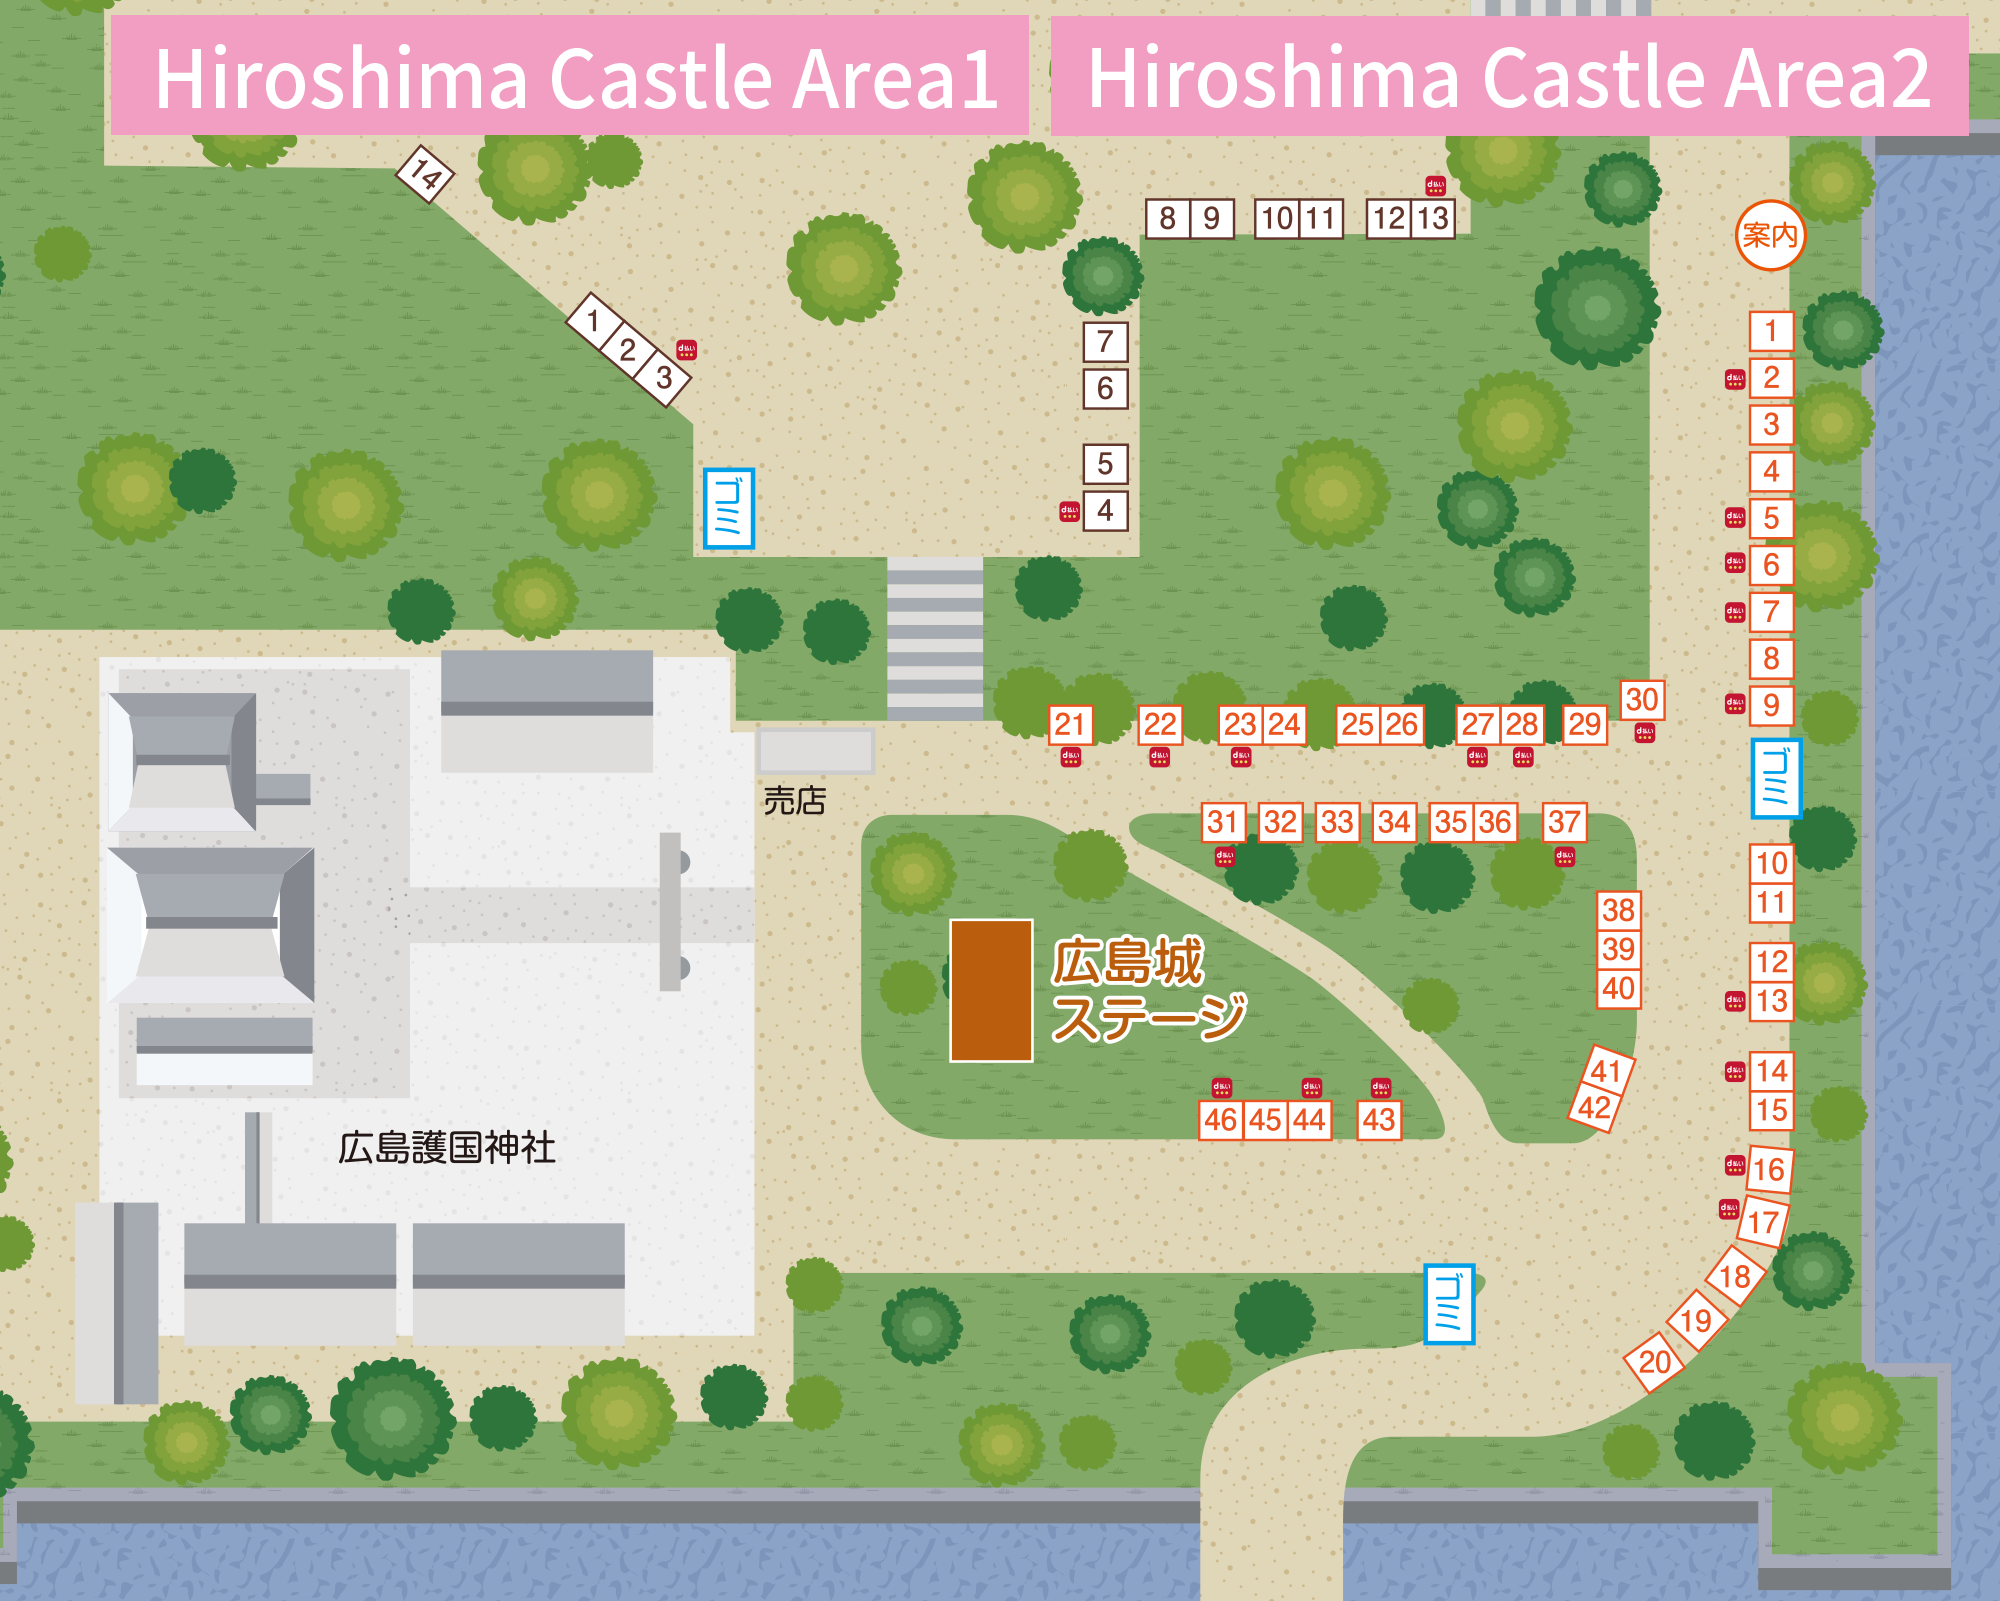 Hiroshima Castle Area